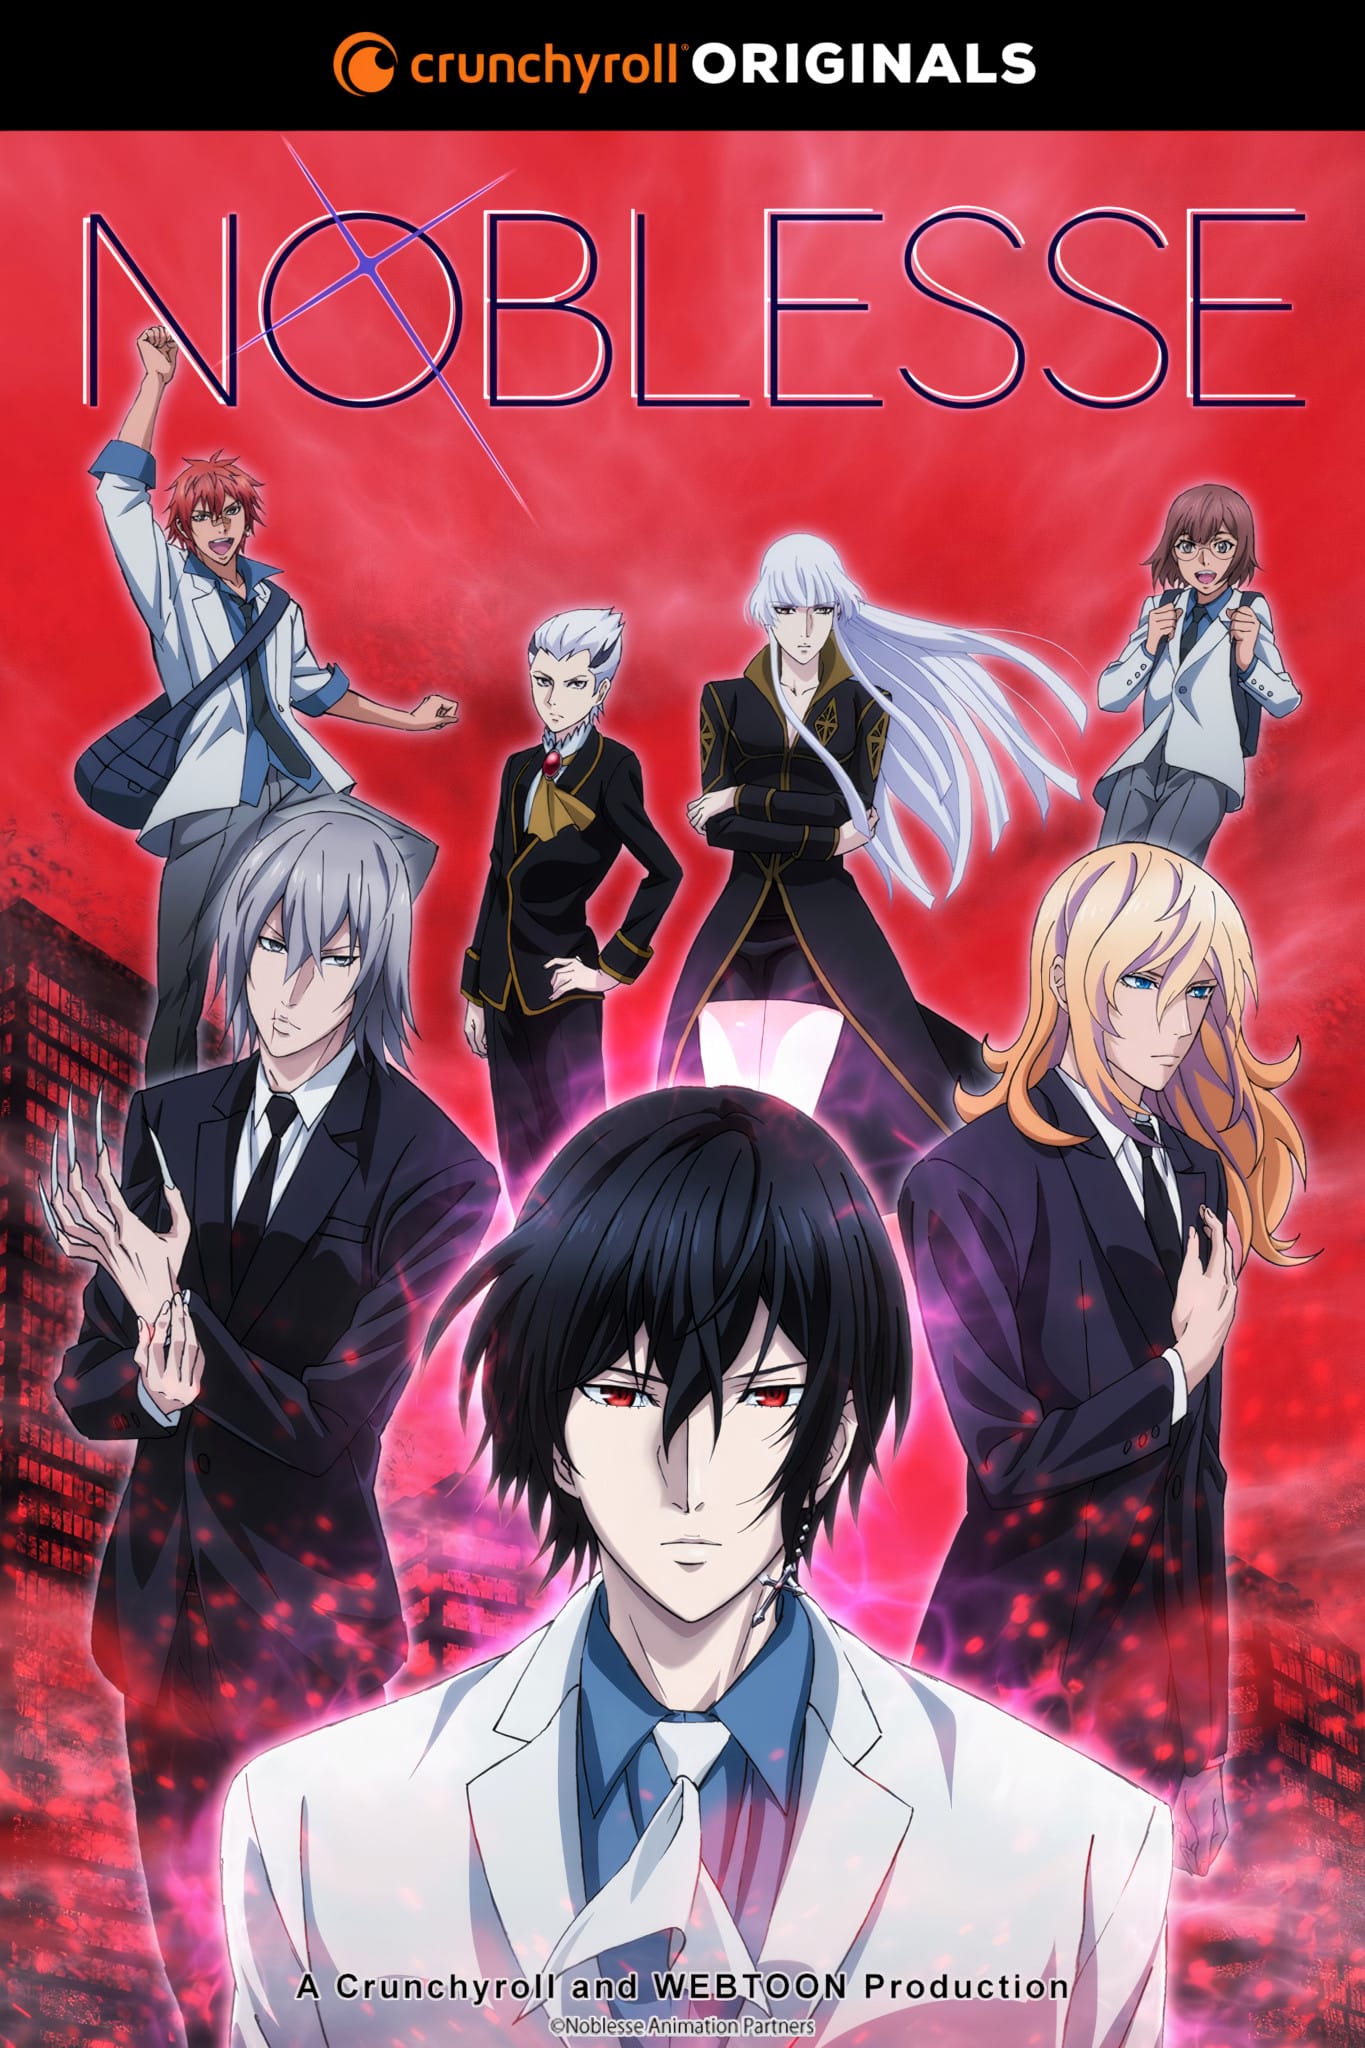 Annonce de la date de sortie pour l'anime Noblesse